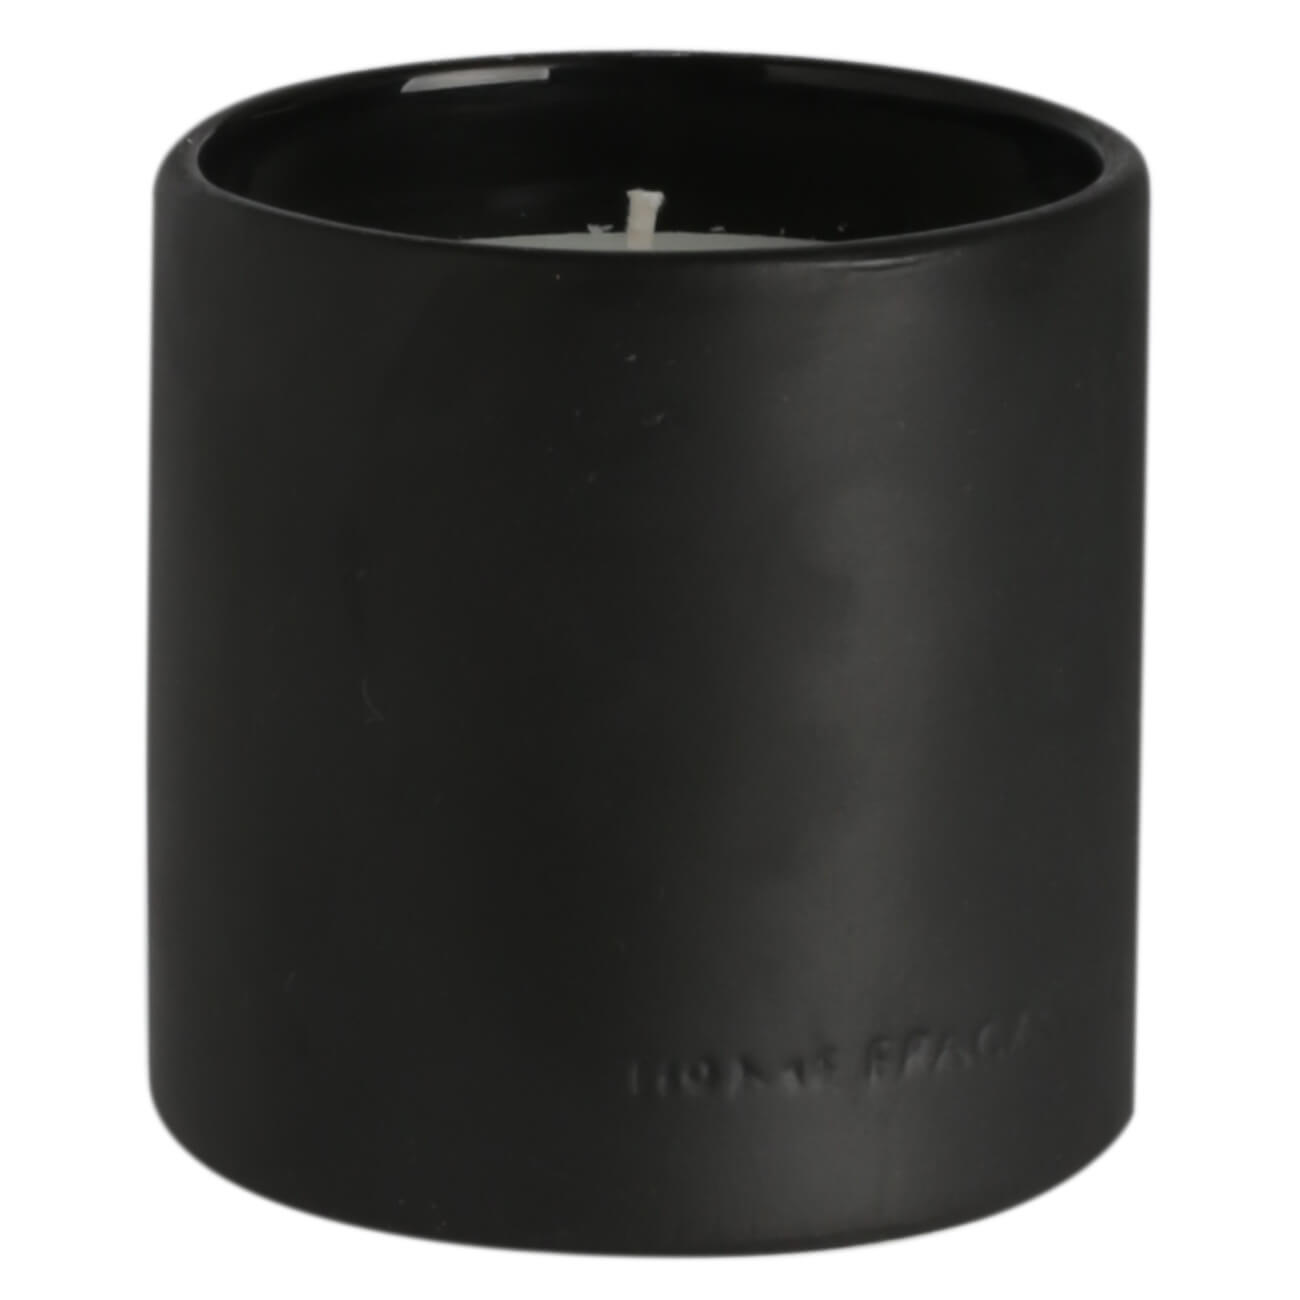 Свеча ароматическая, 9 см, в подсвечнике, керамика, черная, Black forest, B&W свеча ароматическая 9 см в подсвечнике с крышкой стекло citrus ginger amber musky nocturne